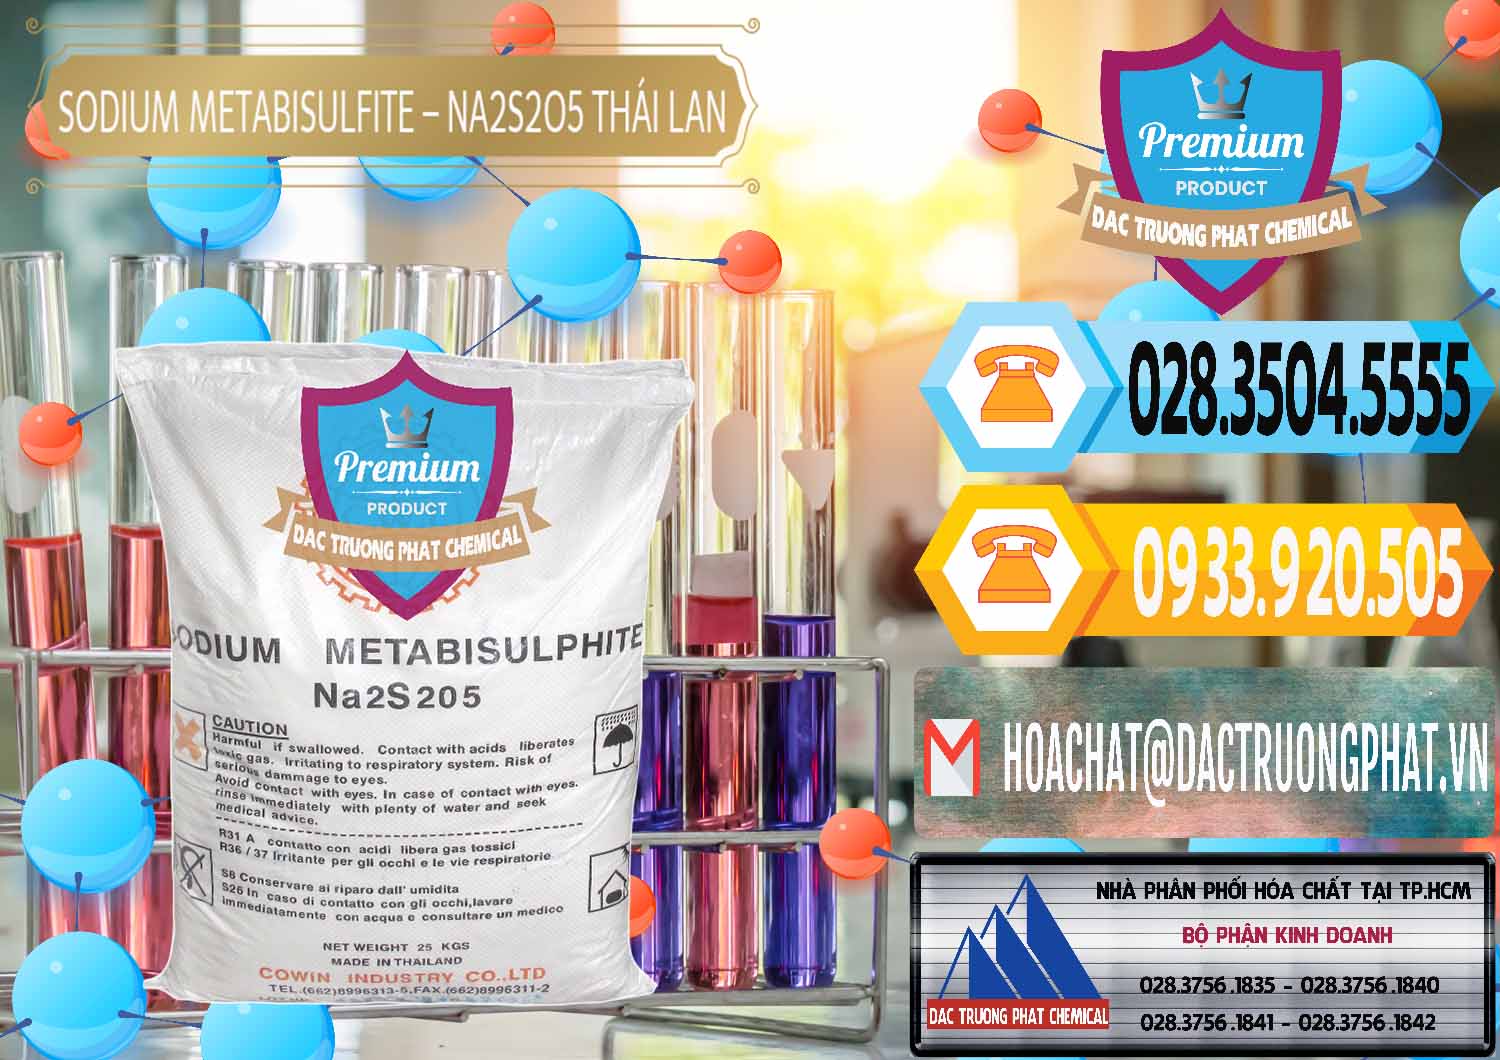 Cty chuyên kinh doanh và bán Sodium Metabisulfite - NA2S2O5 Thái Lan Cowin - 0145 - Cty cung cấp và bán hóa chất tại TP.HCM - hoachattayrua.net